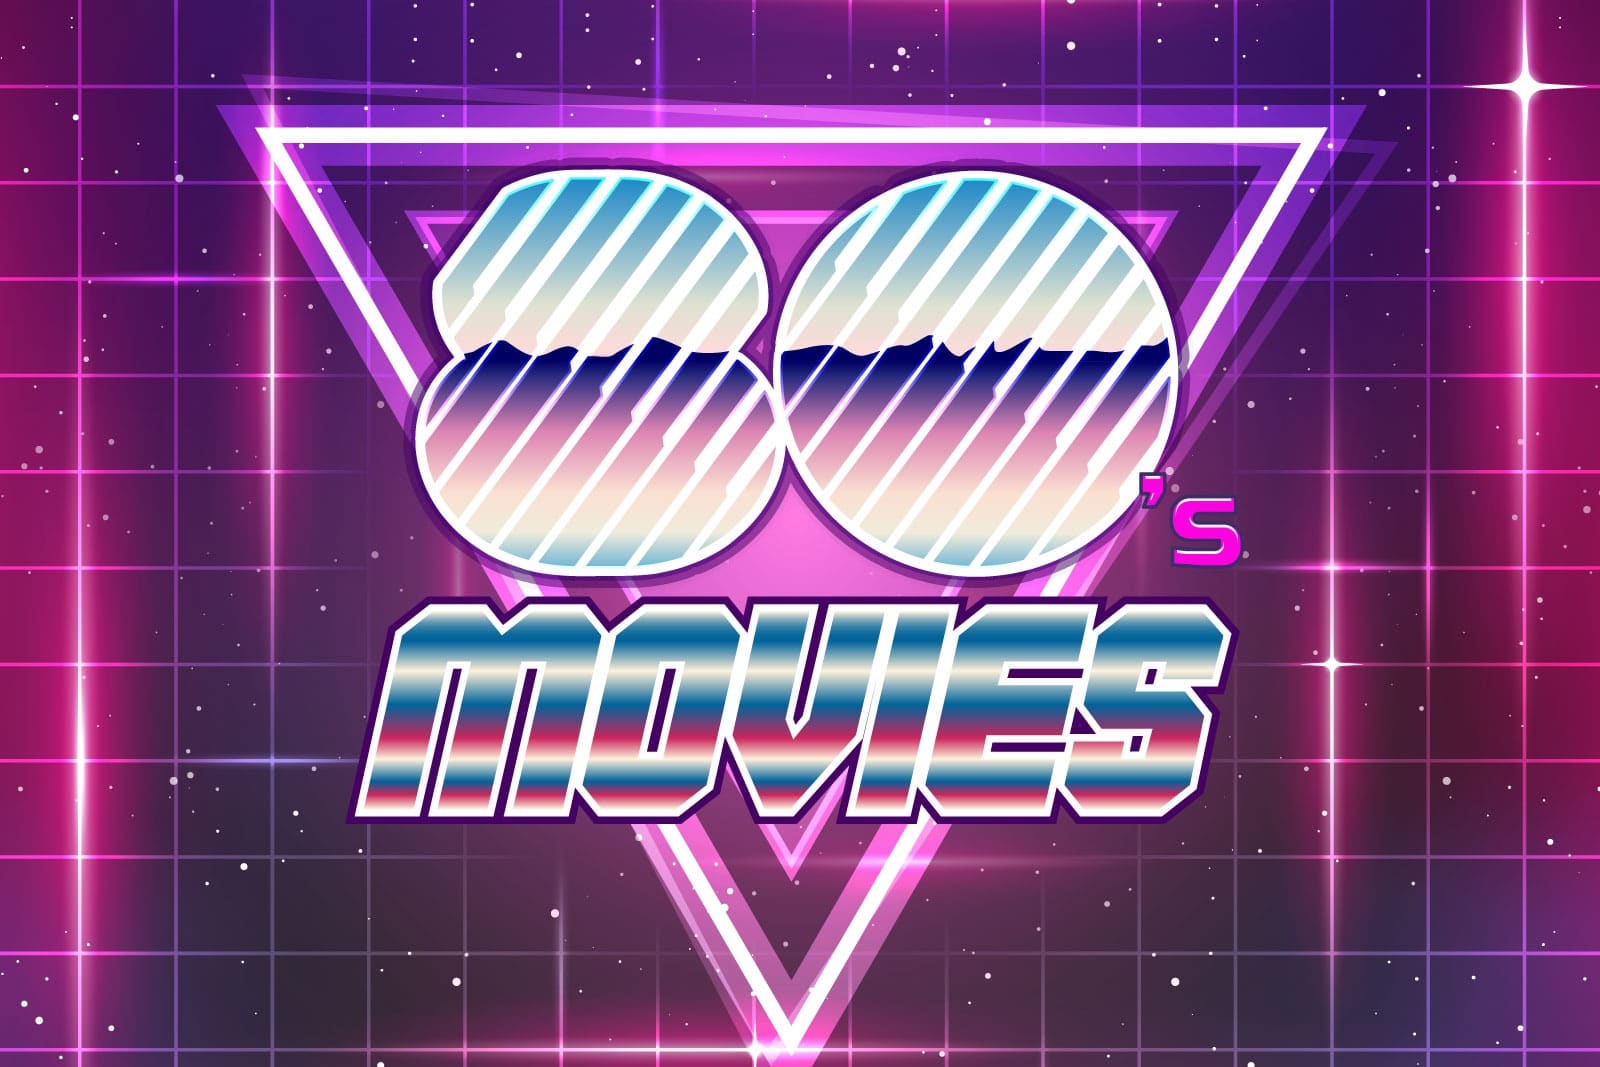 1980s Movies